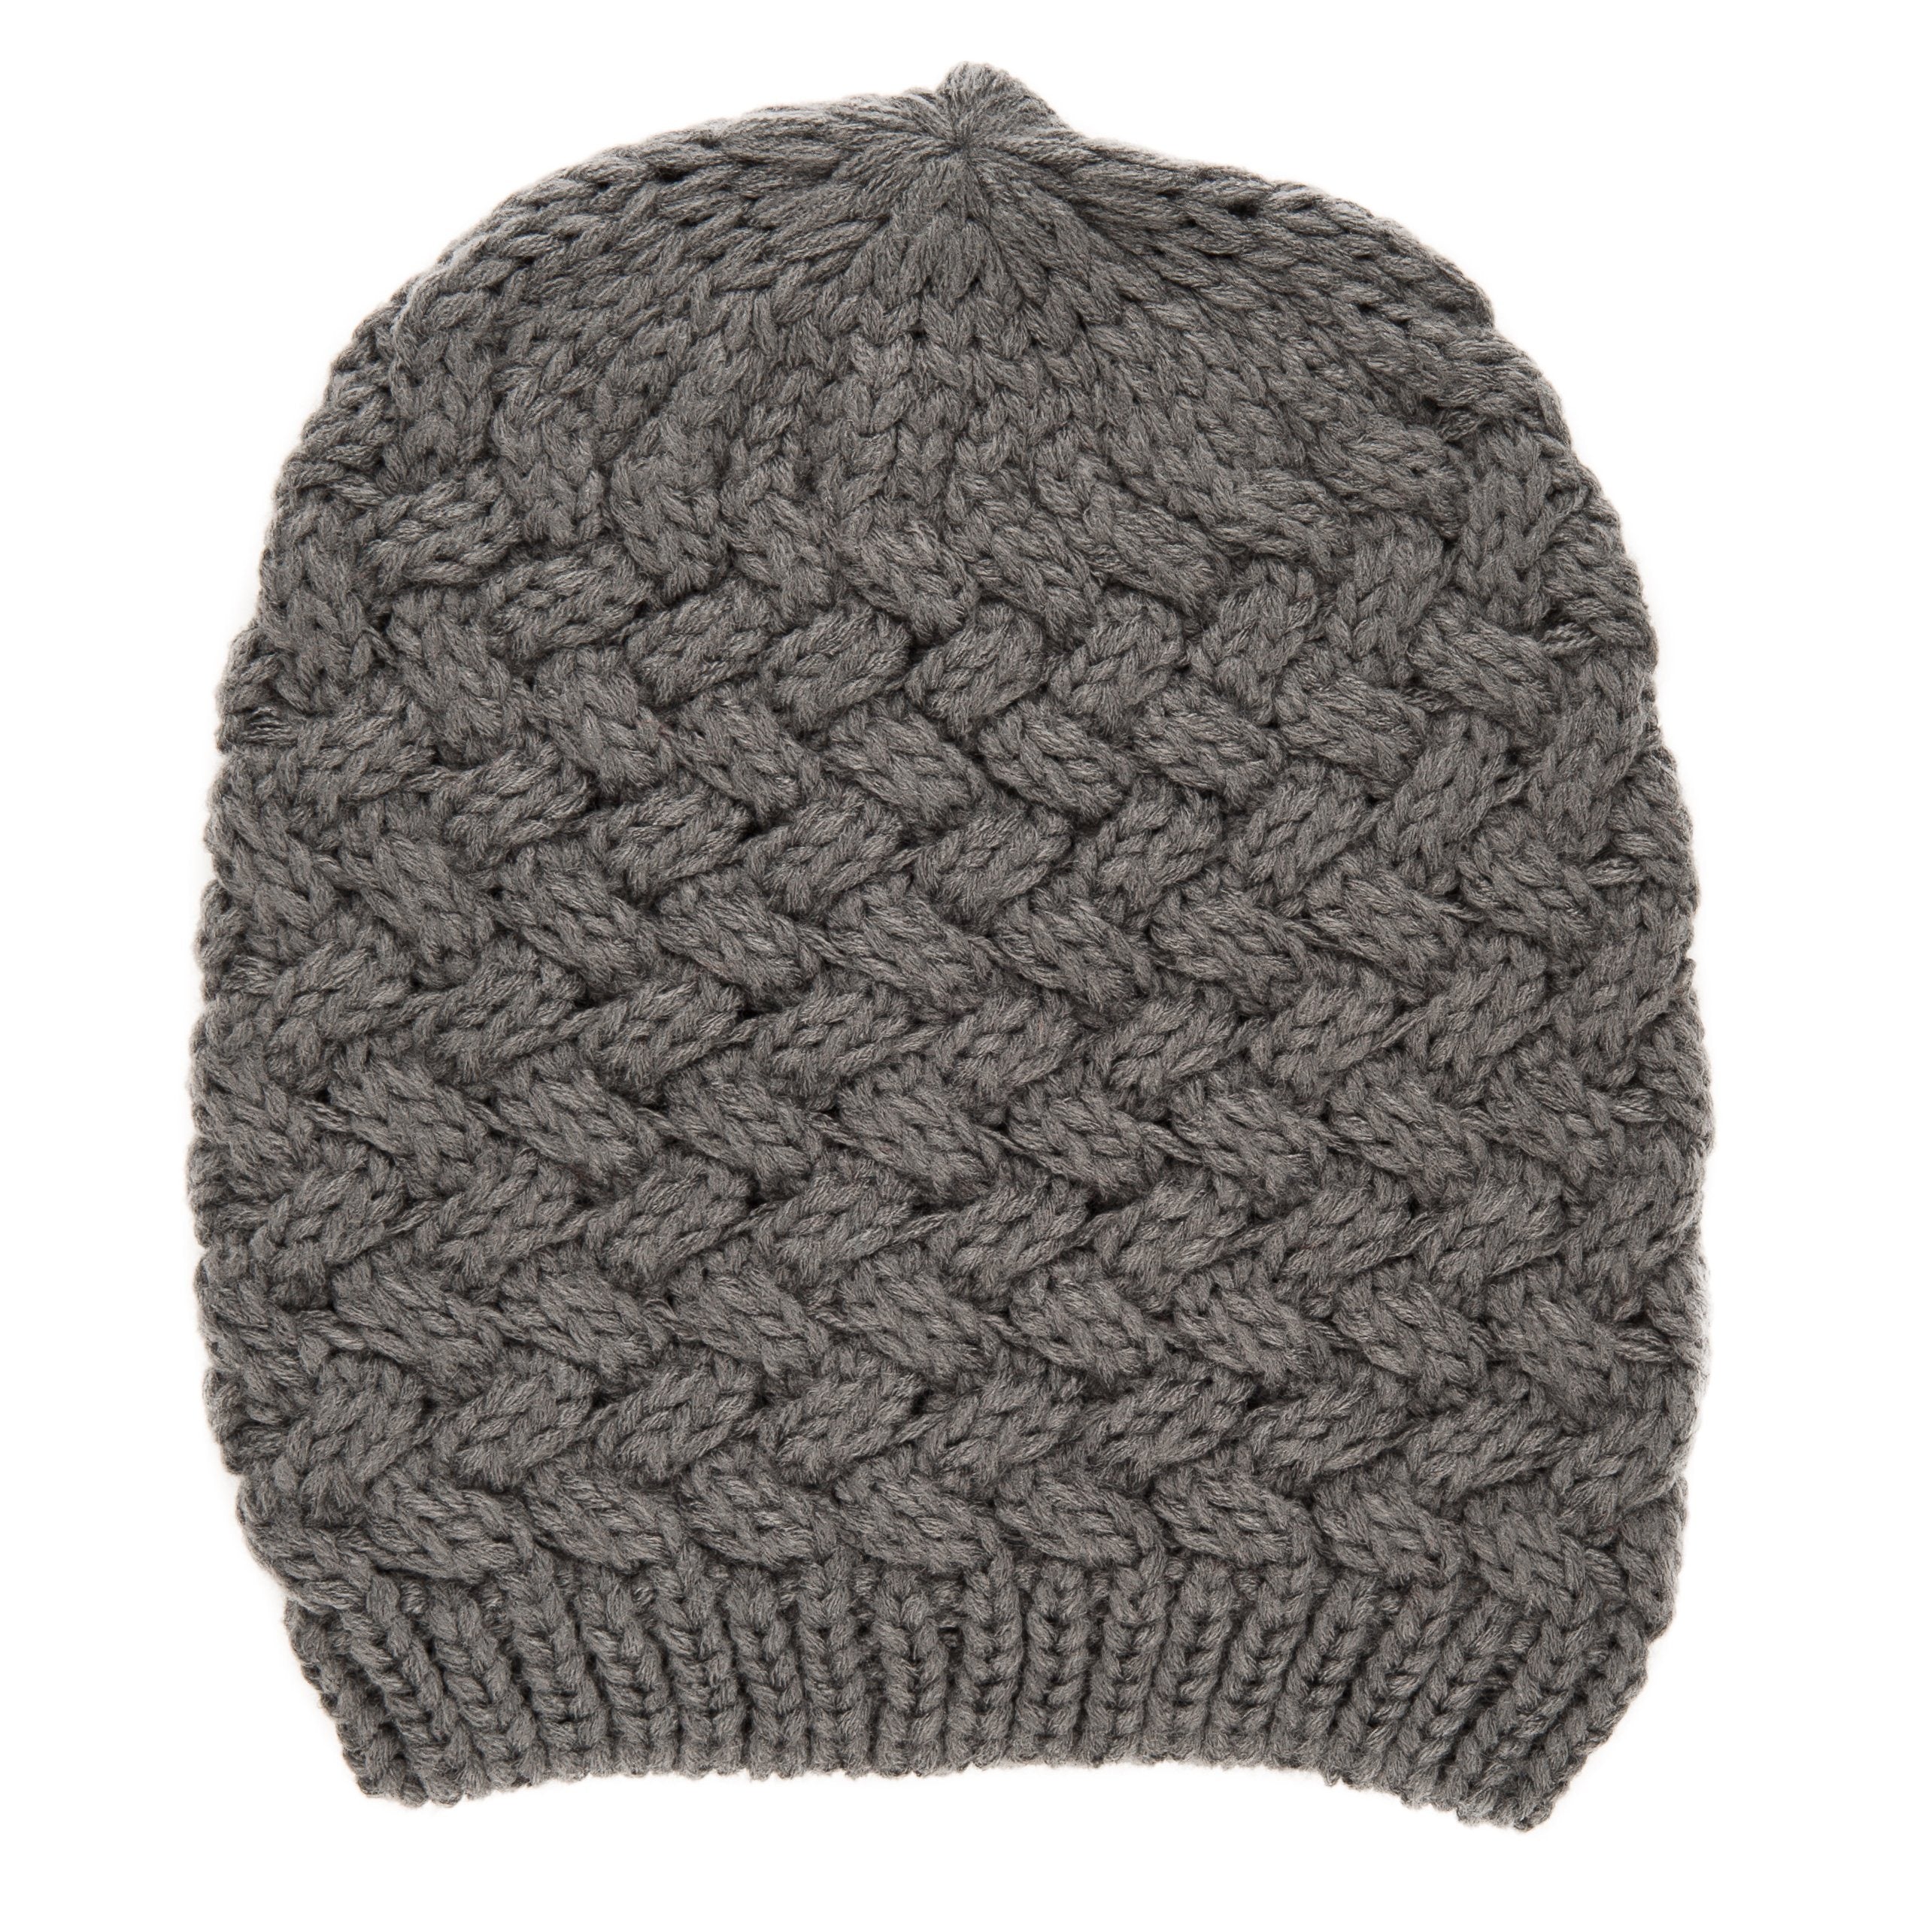 Noble Mount Mens Basket Weave Winter Hat